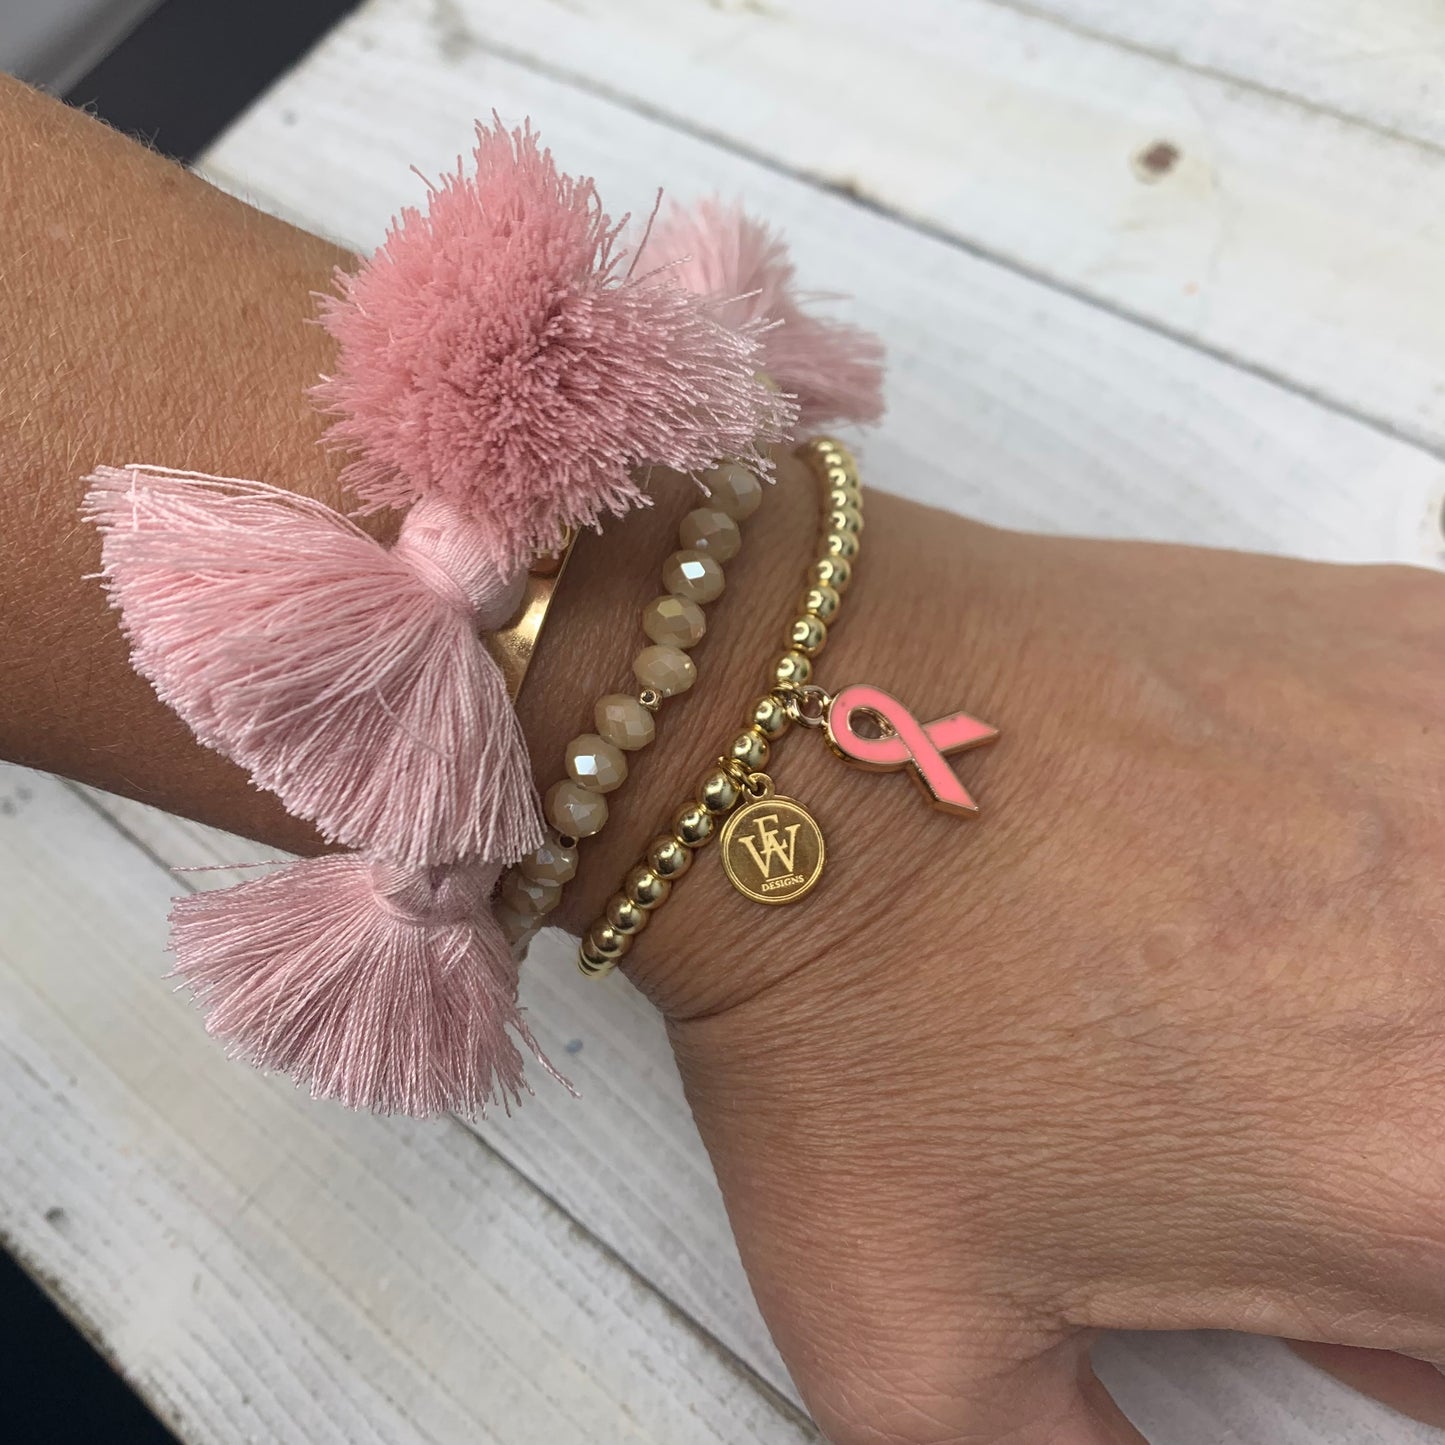 Erika Williner Designs - Pink ribbon breast cancer awareness bracelet